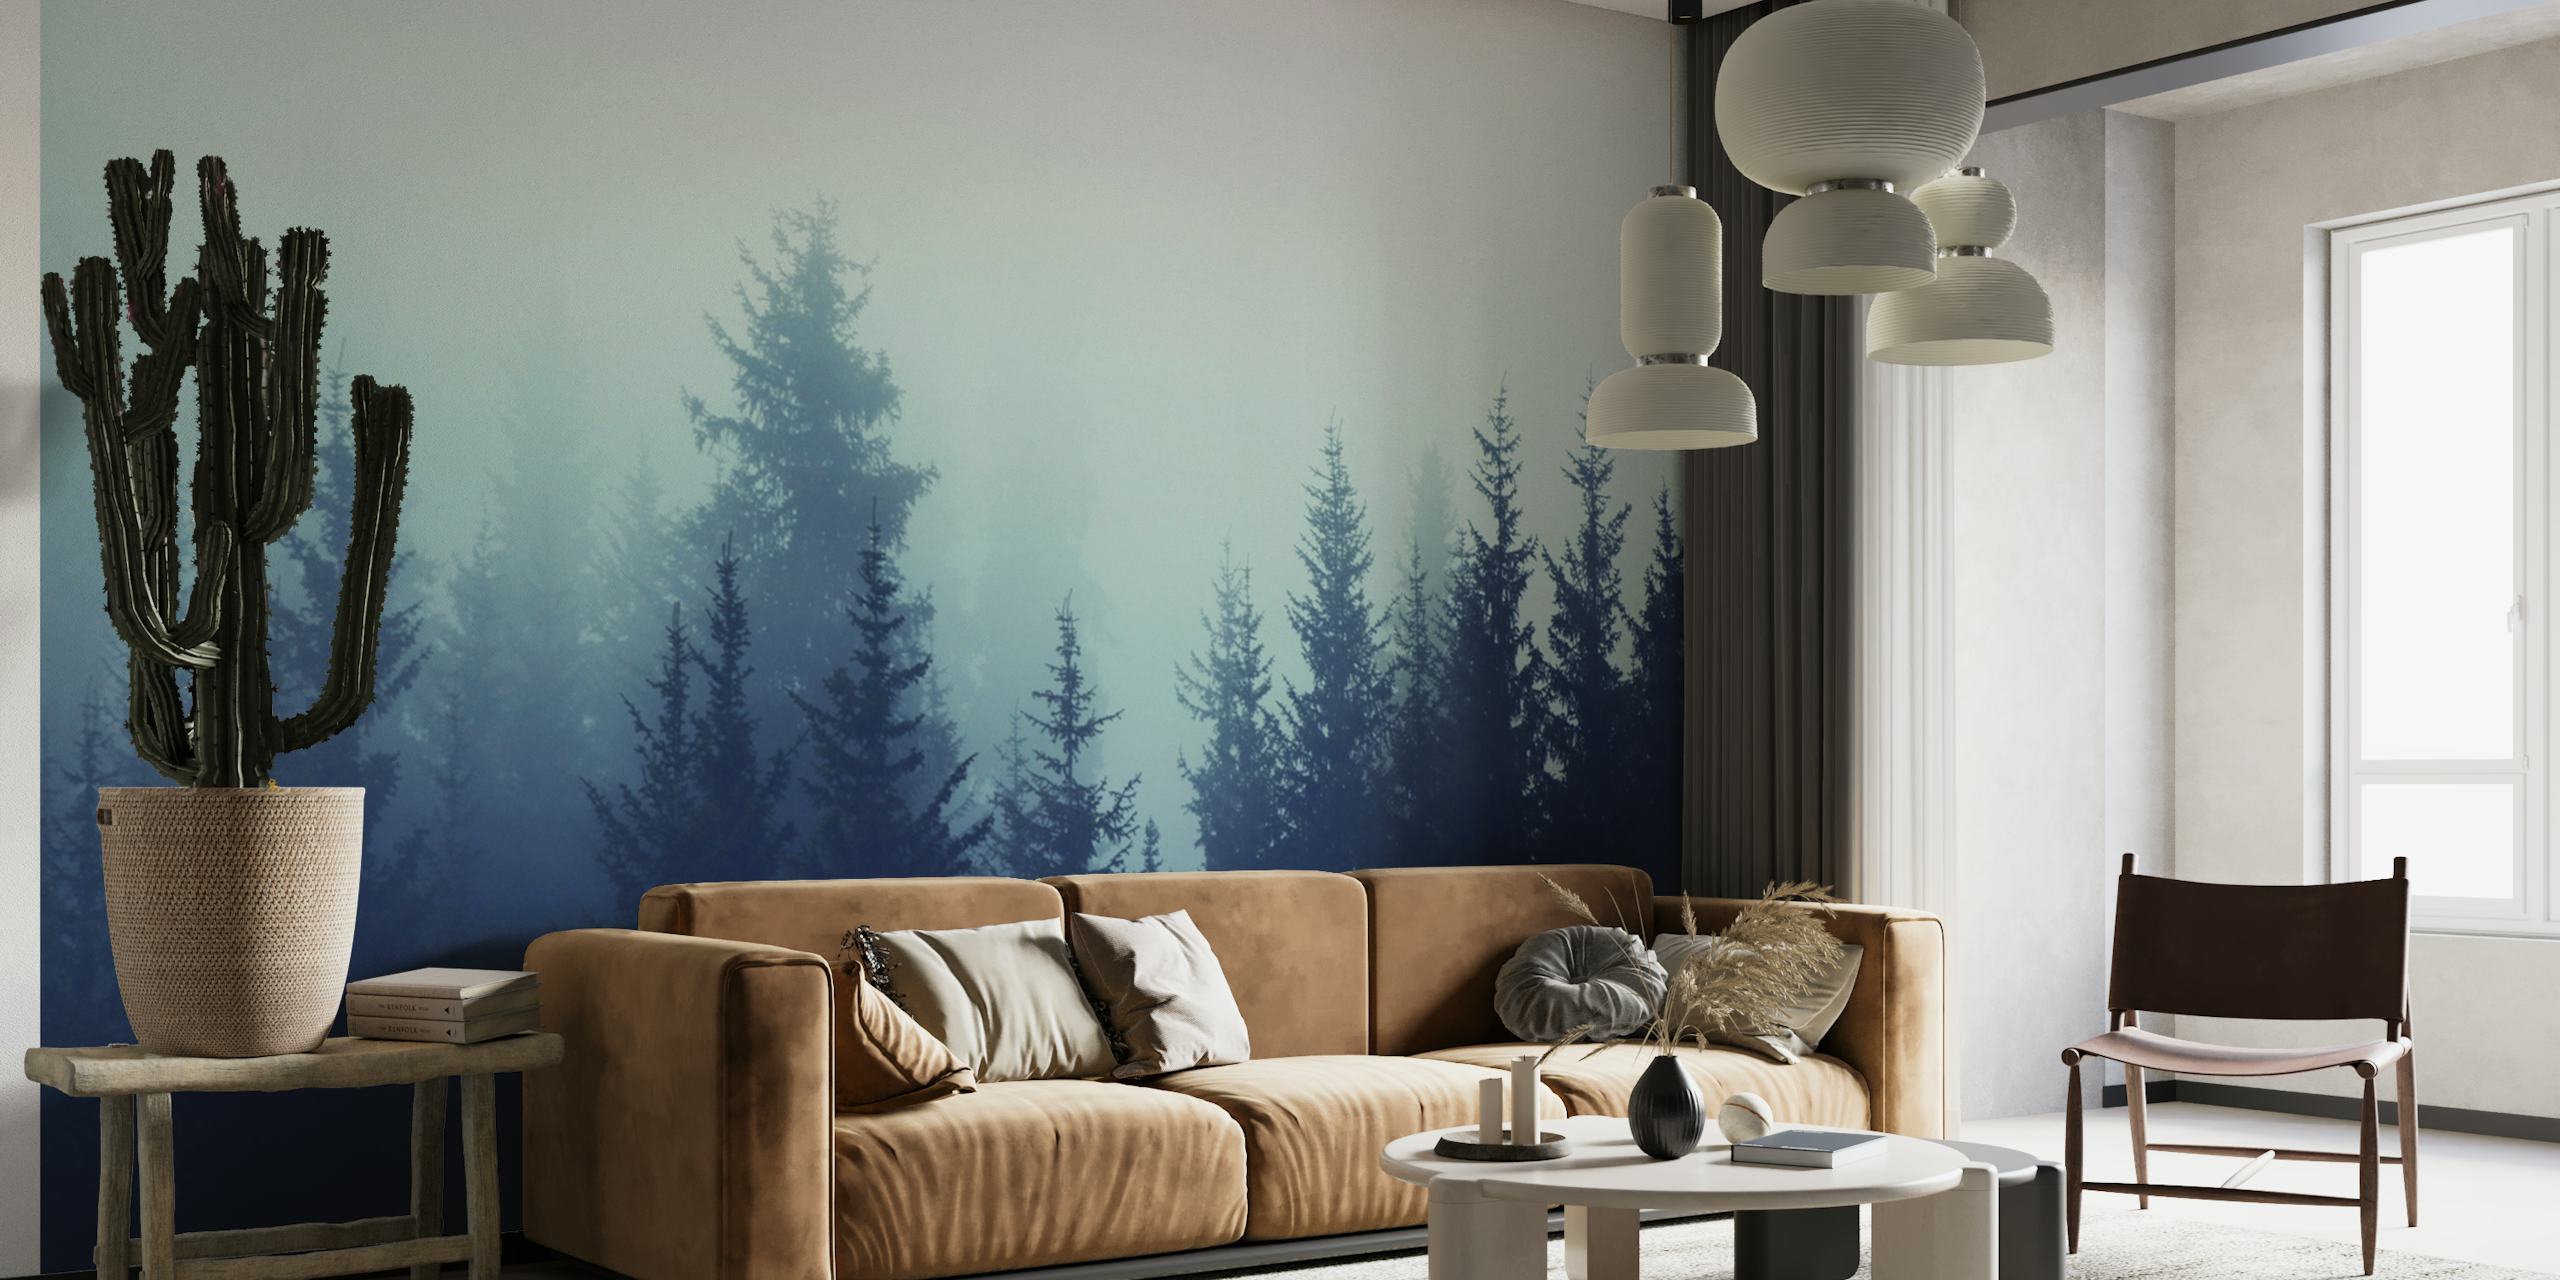 Une fresque murale représentant une forêt de pins brumeuse dans des tons sourds.